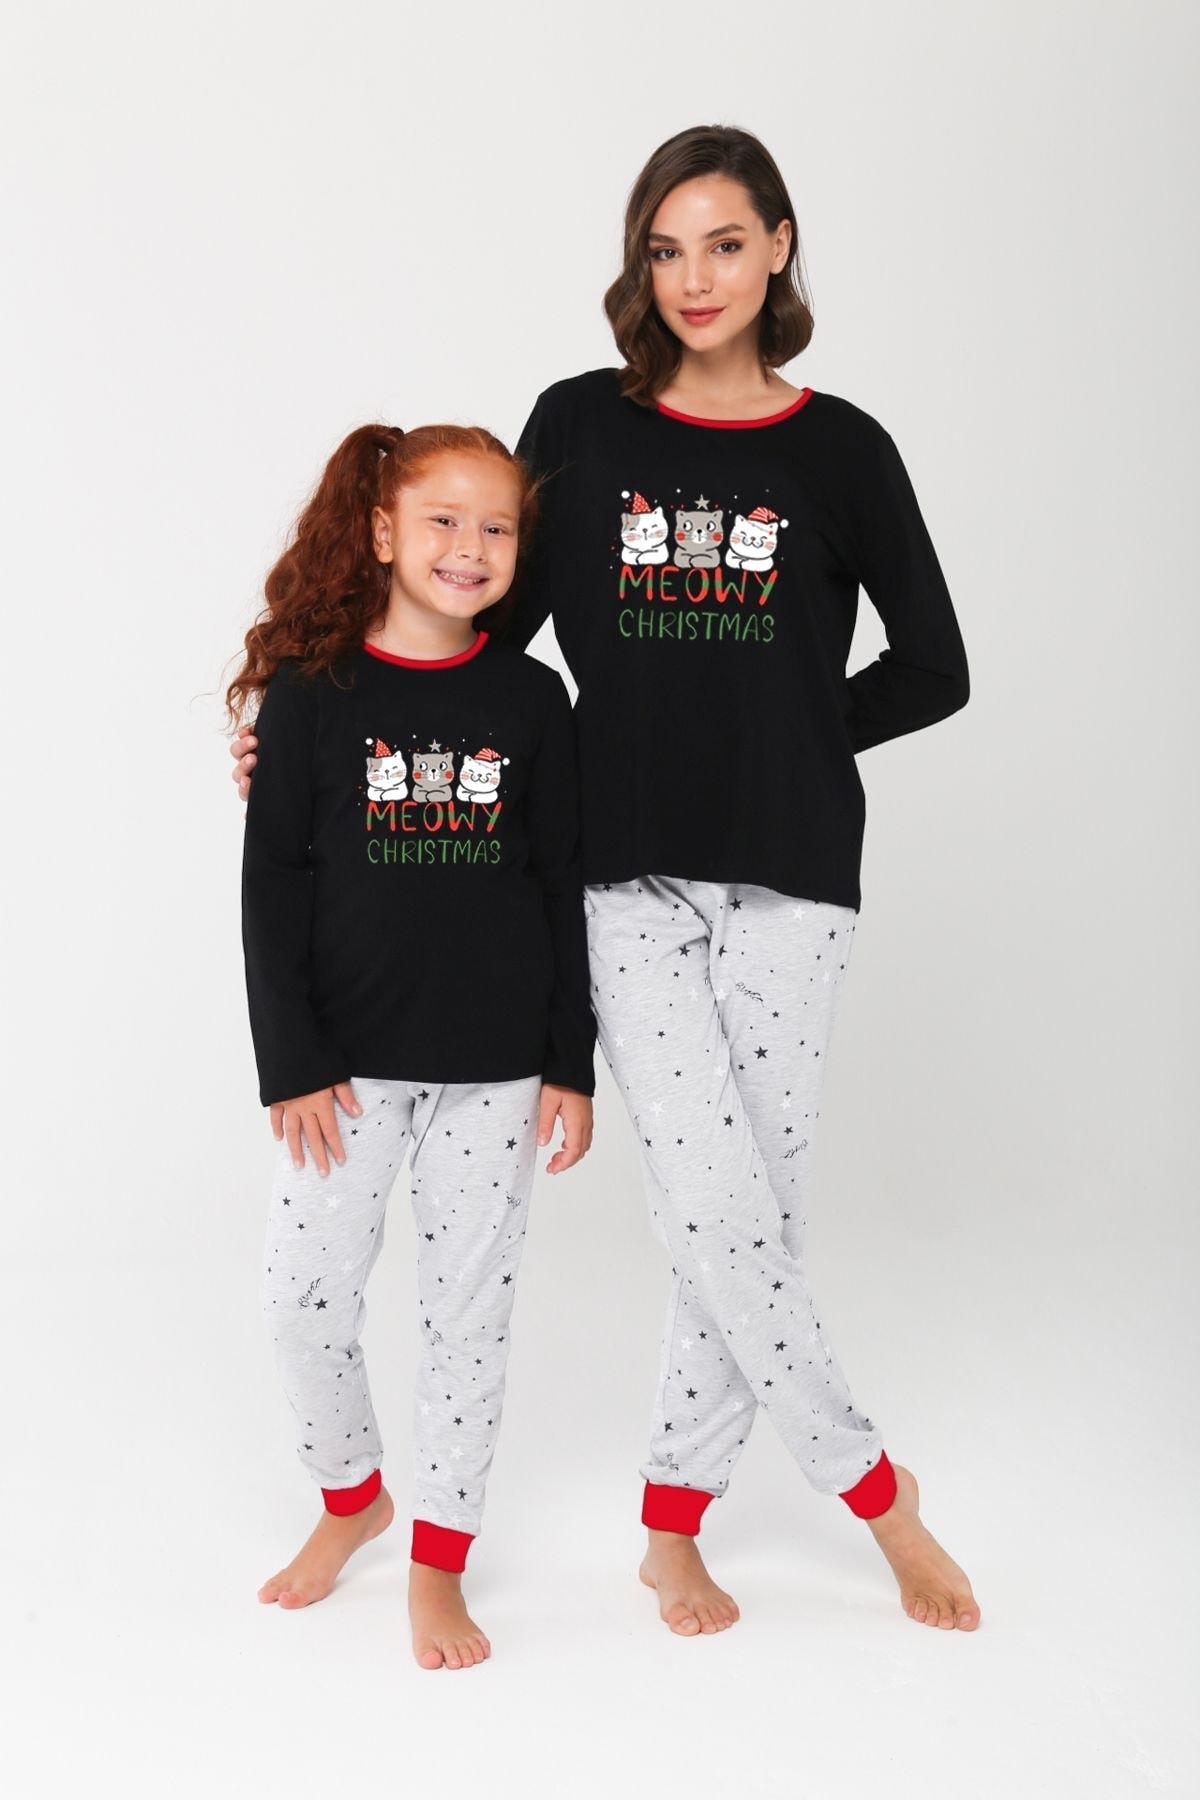 LILIAN Cute Famıly Yeni Yıl Temalı Aile Pijama Takımı.ayrı Ayrı Satılır Fıyatları Farklıdır